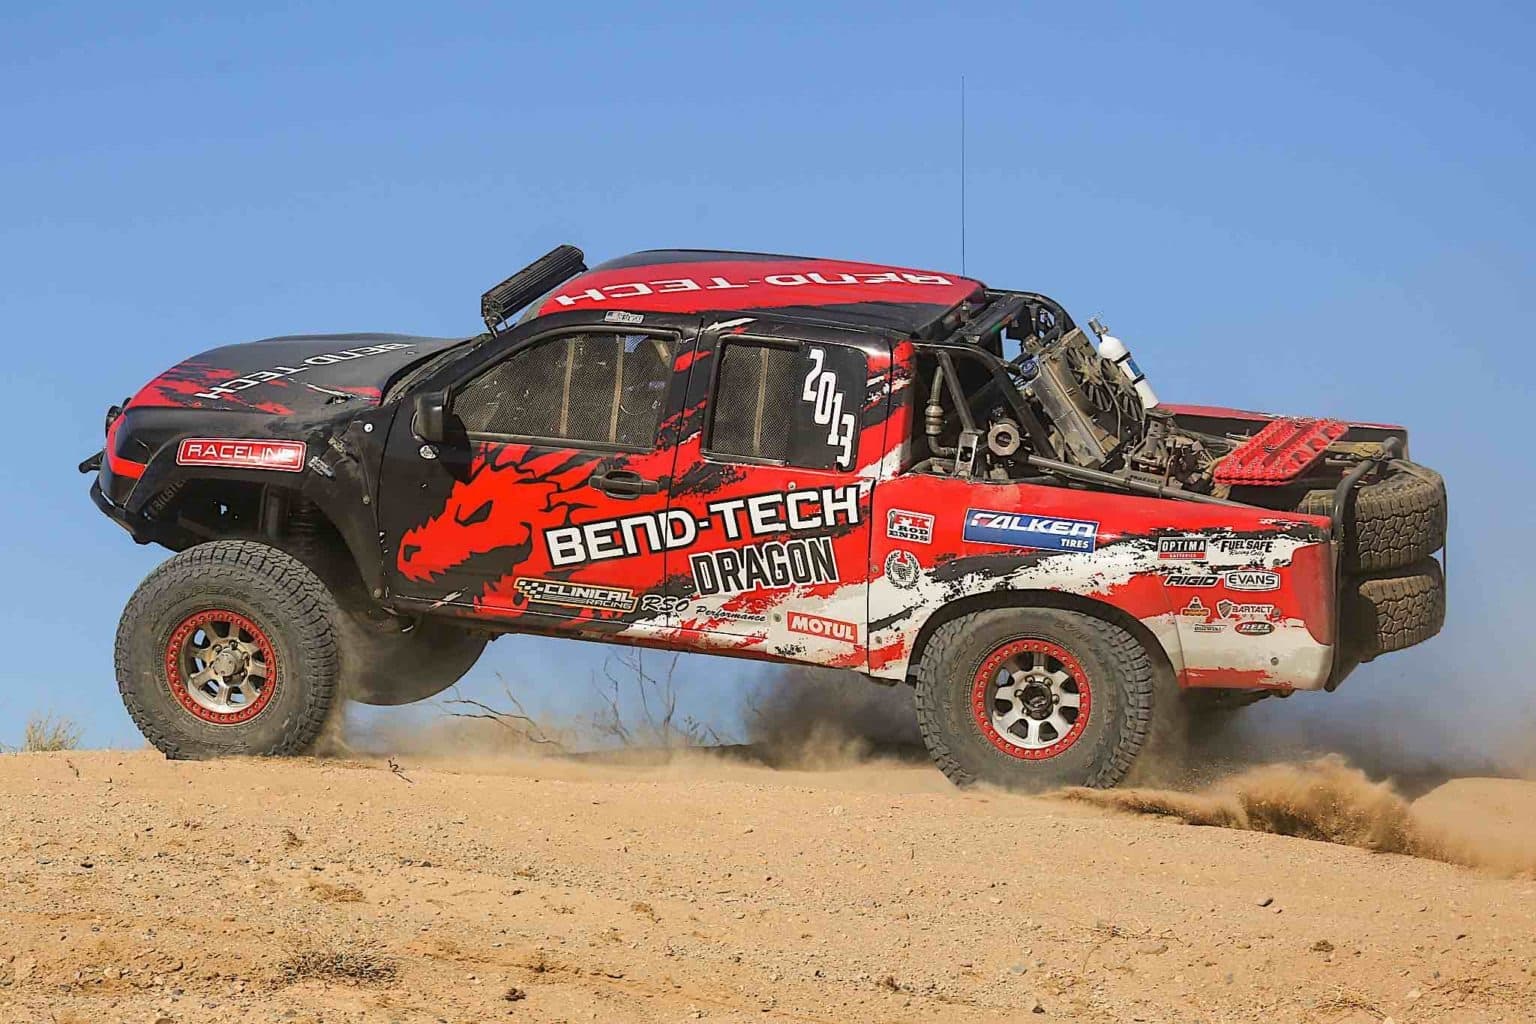 A racing truck jumping over a dirt dune.